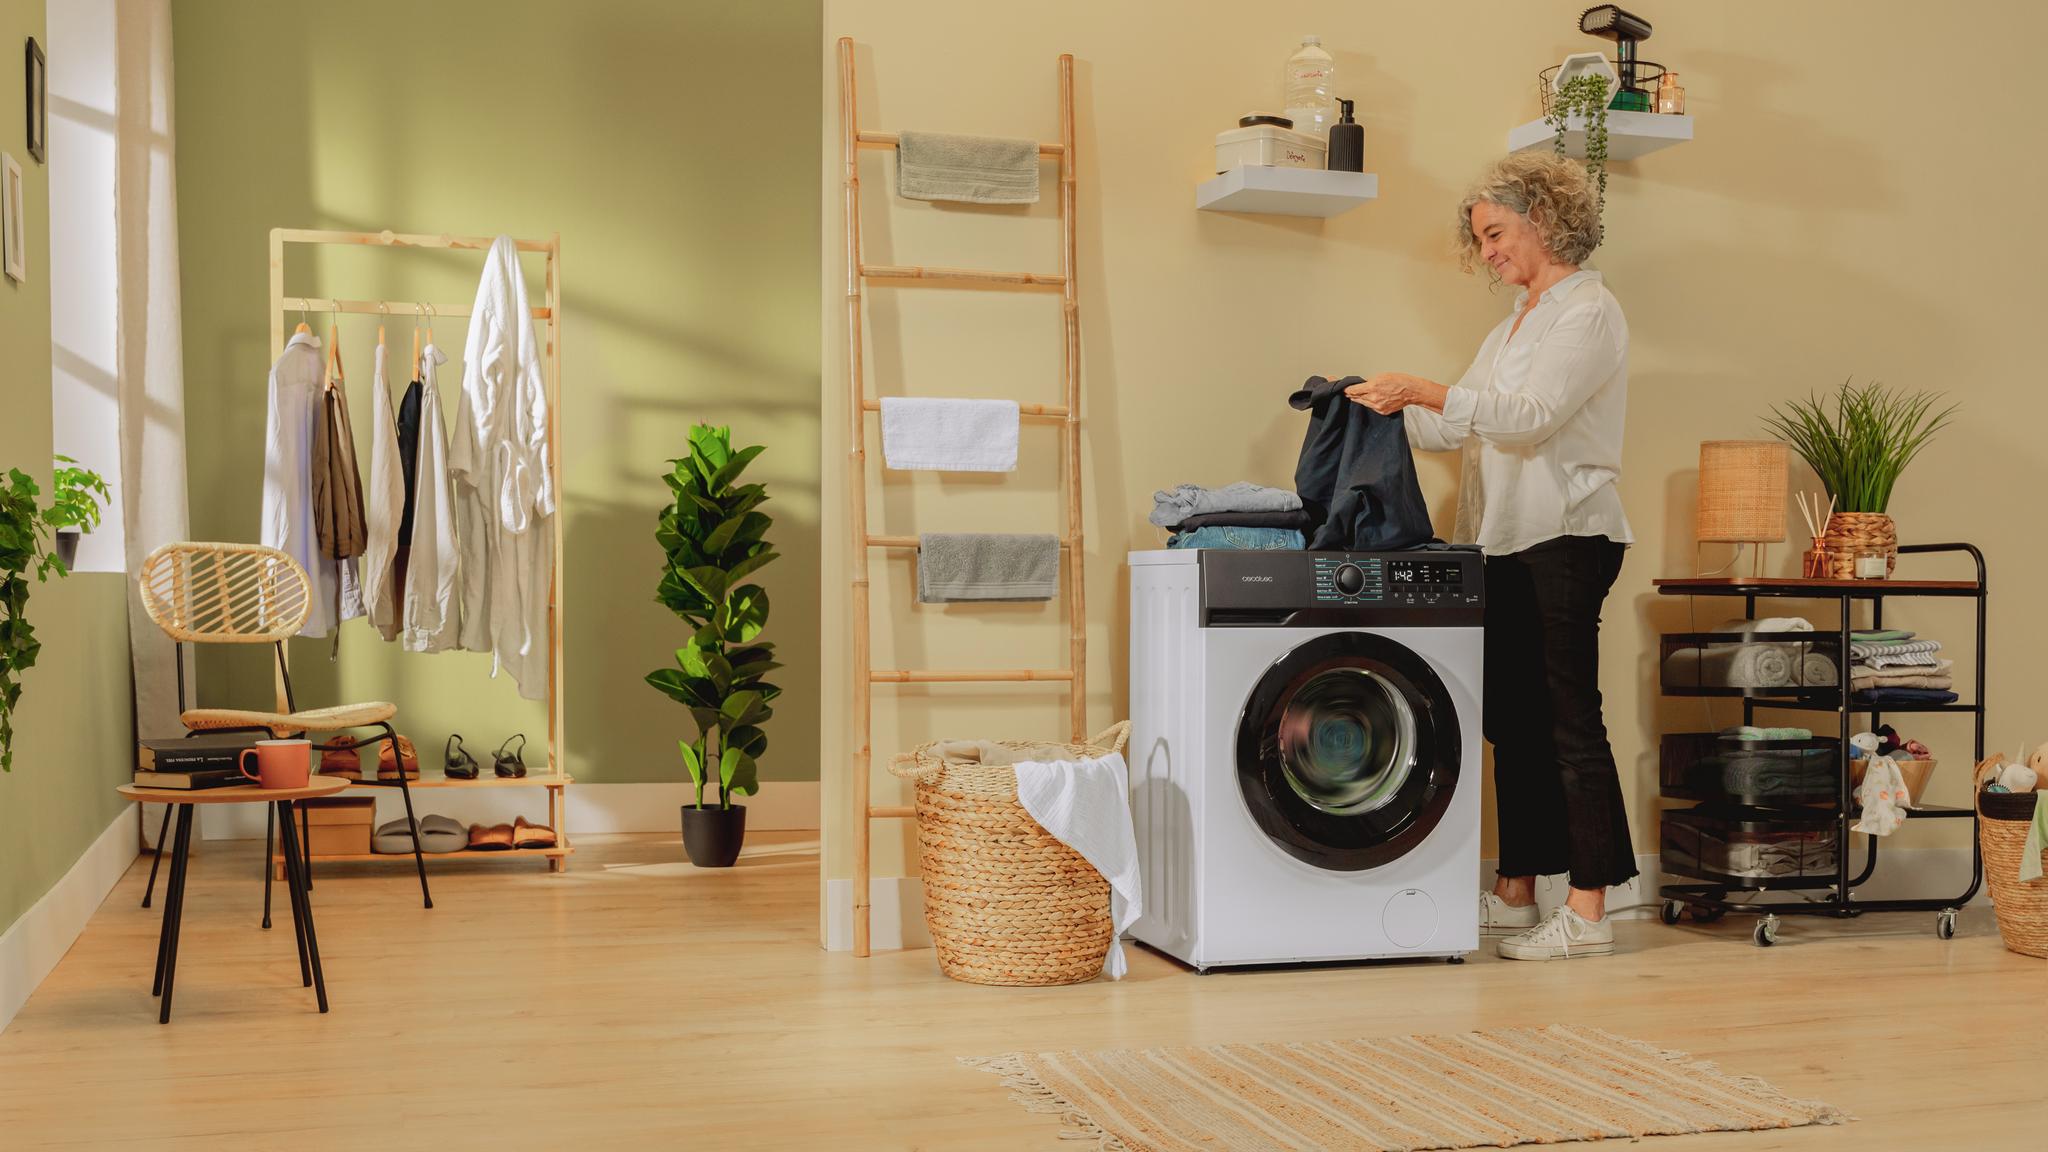 Cecotec presenta su nueva lavadora Bolero DressCode 10200 Inverter - Marrón  y Blanco